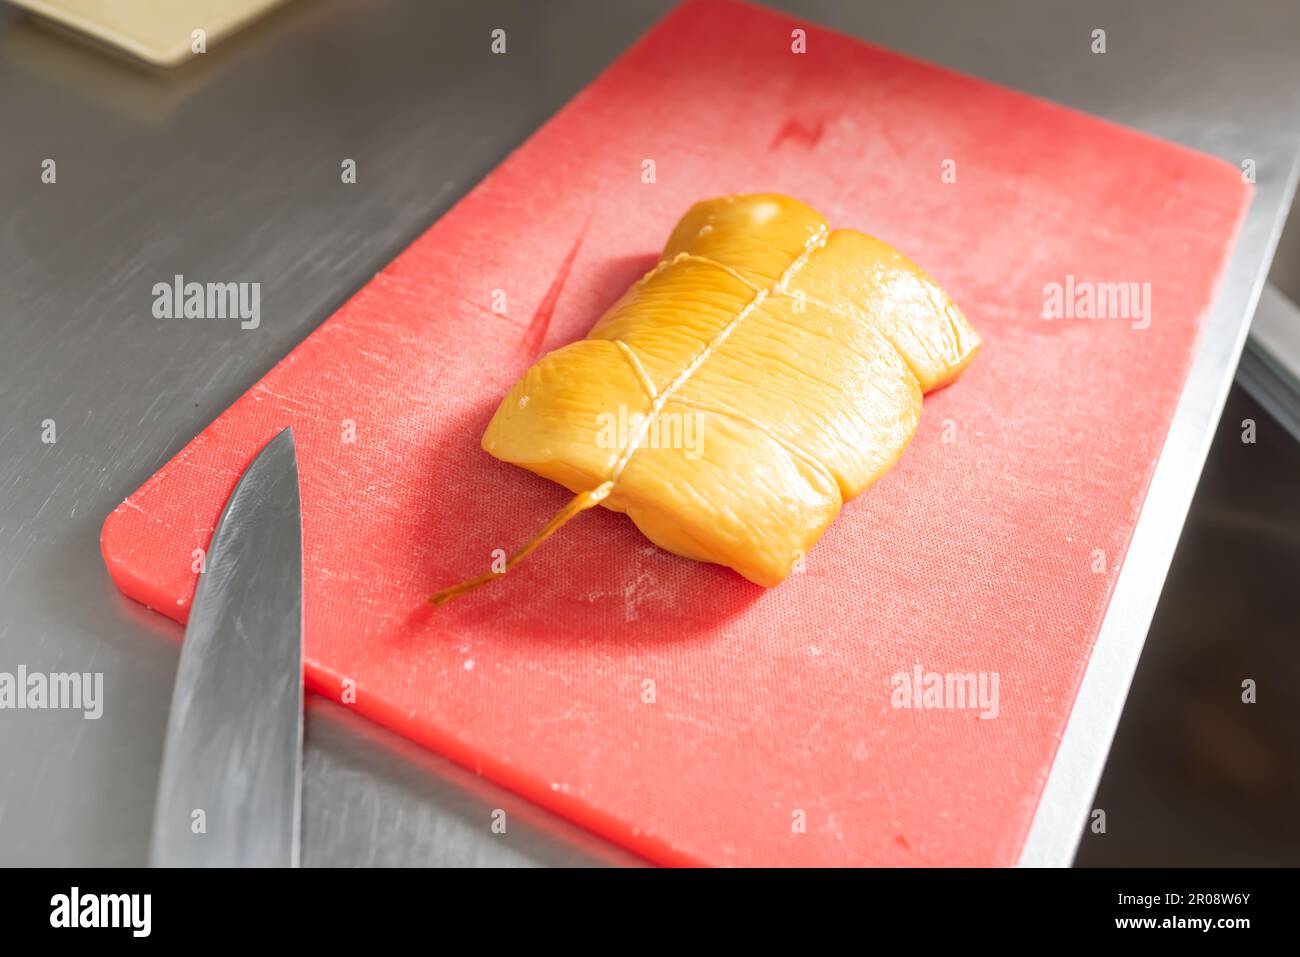 Le cuisinier coupe le calmar fumé pour les sushis sur un tableau rouge. Photo de haute qualité Banque D'Images